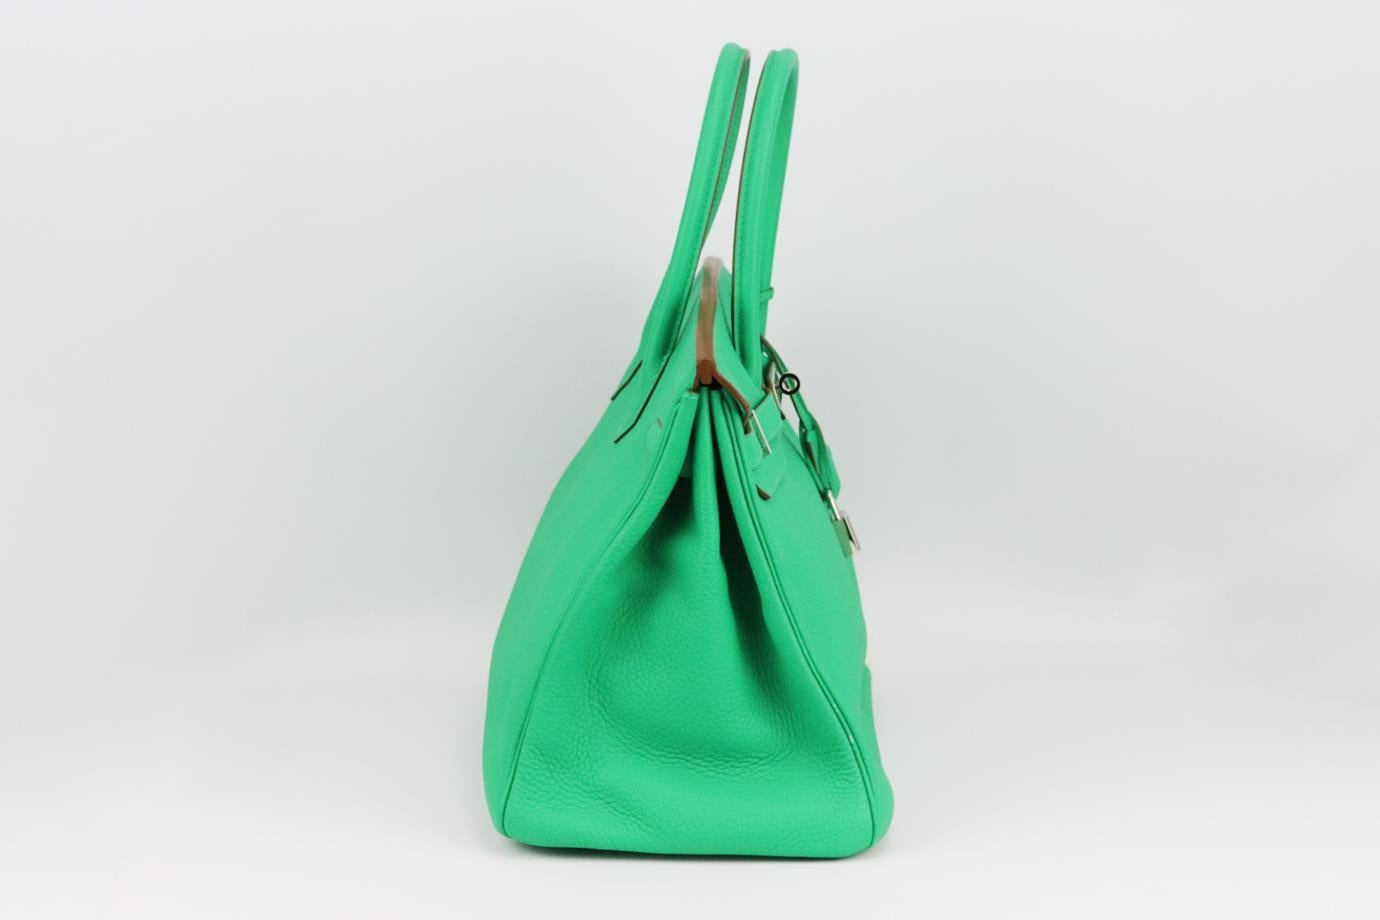 <ul>
<li>Hermès 2012 Birkin 35cm sac en cuir Togo.</li>
<li>Fabriqué en France, ce magnifique sac à main Hermès 'Birkin' 2012 a été réalisé en cuir vert 'Togo' extérieur en 'Menthe' avec intérieur en cuir assorti, cette pièce est décorée avec des